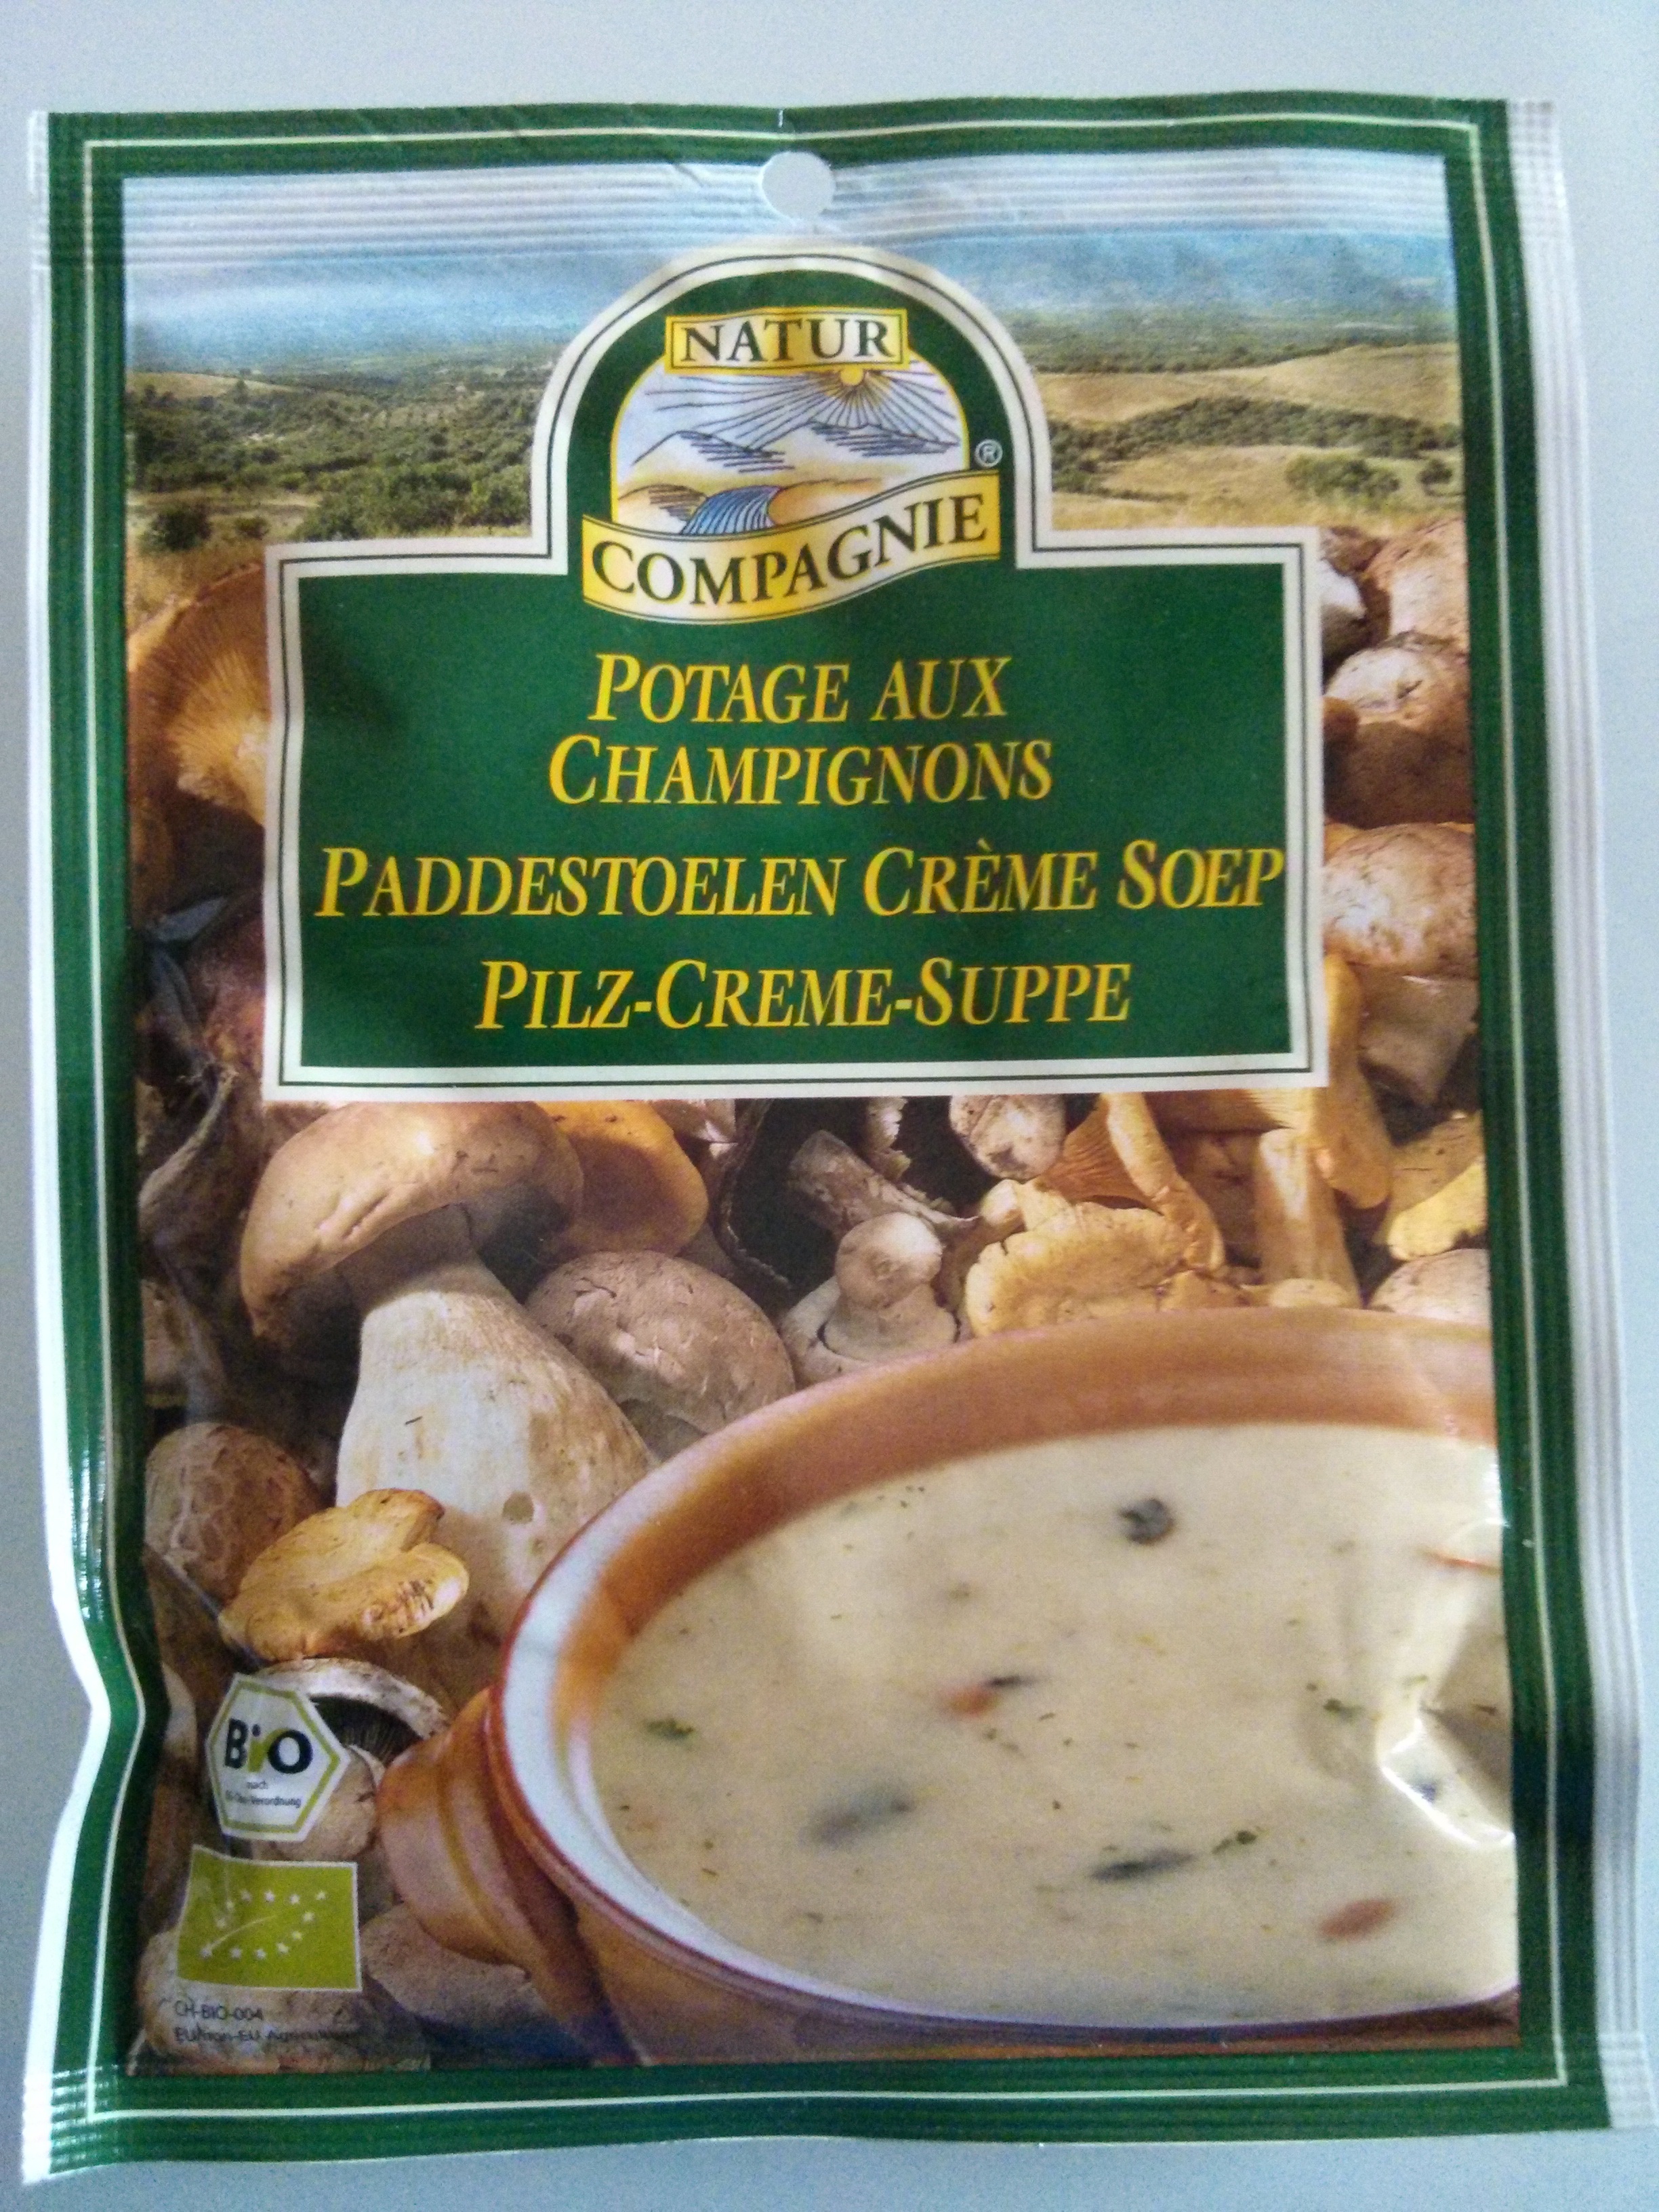 Potage aux champignons - Product - fr